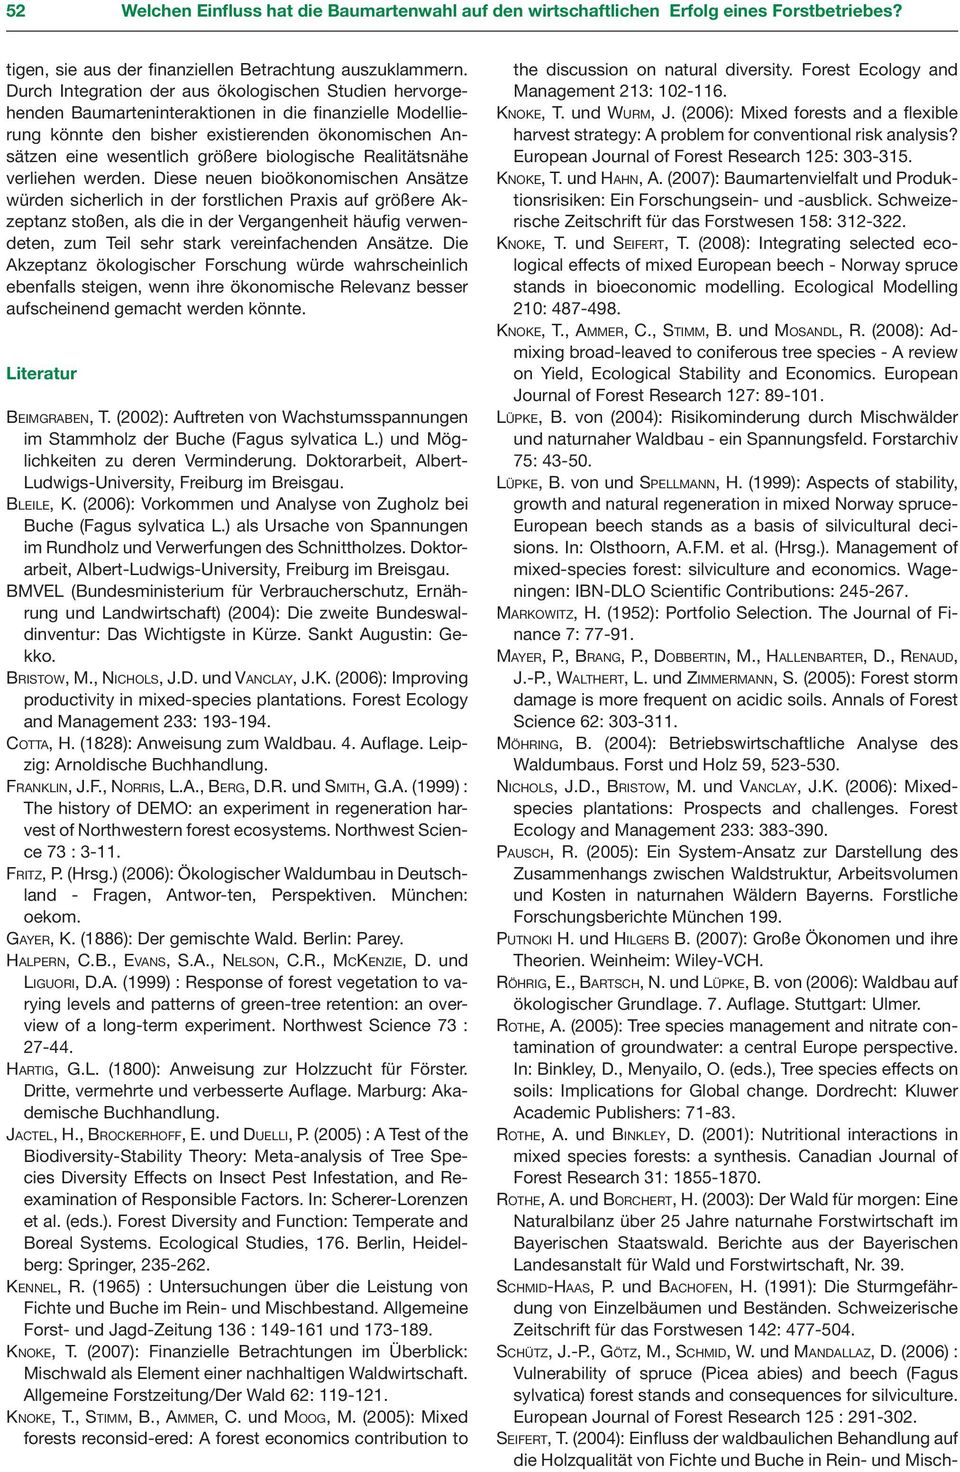 (2007): Baumartenvielfalt und Produktionsrisiken: Ein Forschungsein- und -ausblick. Schweizerische Zeitschrift für das Forstwesen 158: 312-322. Kn o k e, T. und Se i f e rt, T.